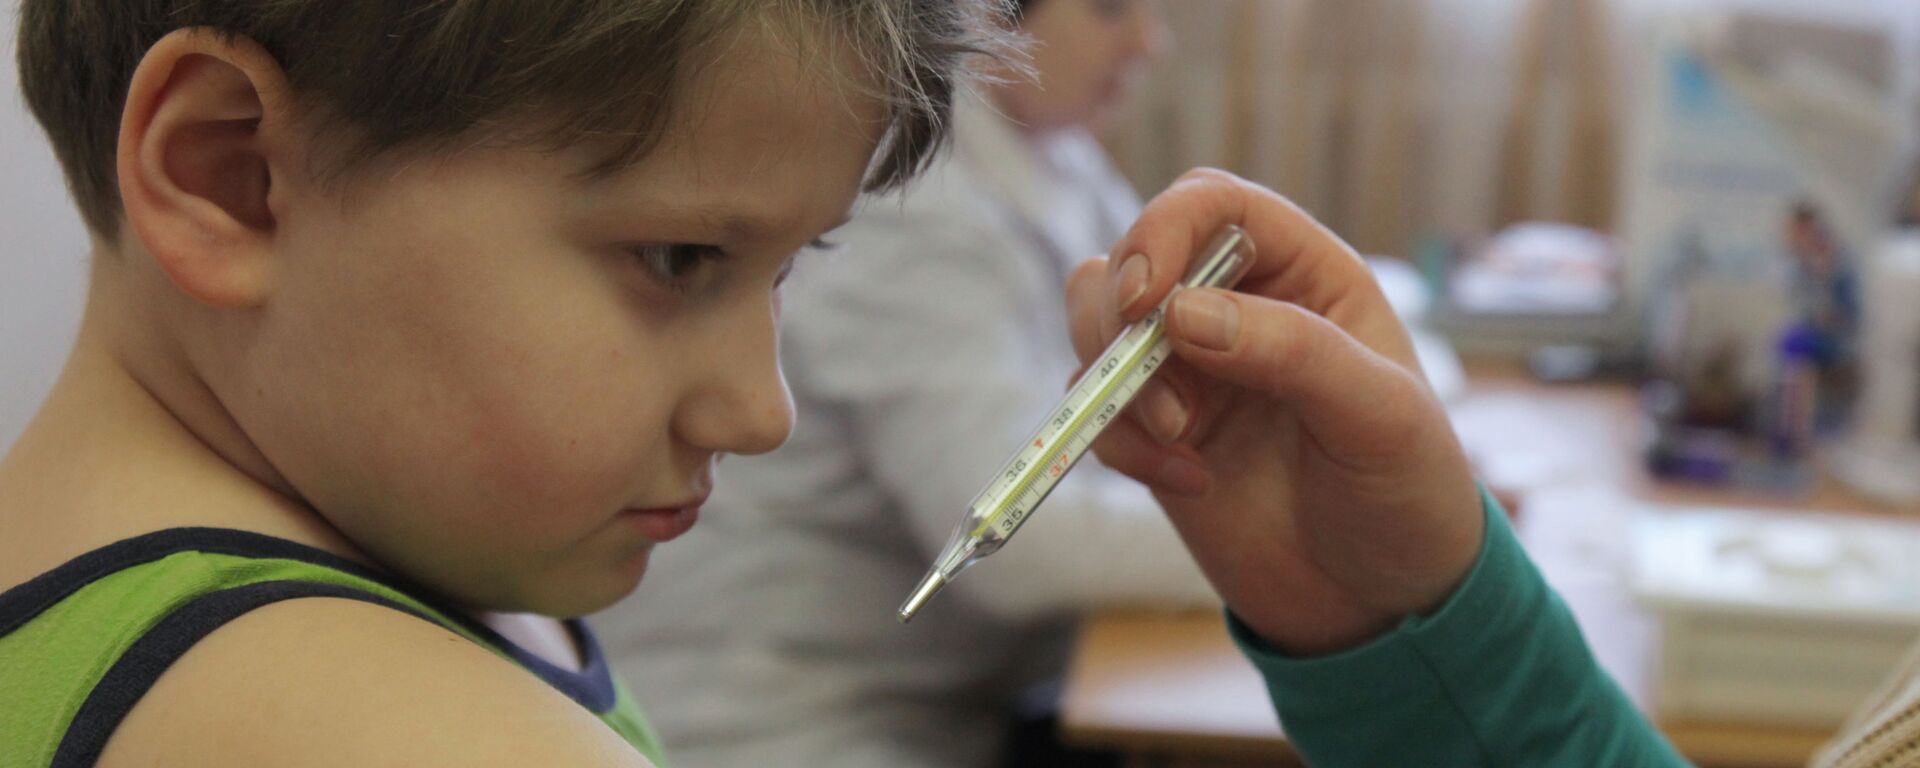 Мальчик на приеме у педиатра измеряет температуру перед прививкой  - Sputnik Беларусь, 1920, 15.10.2021